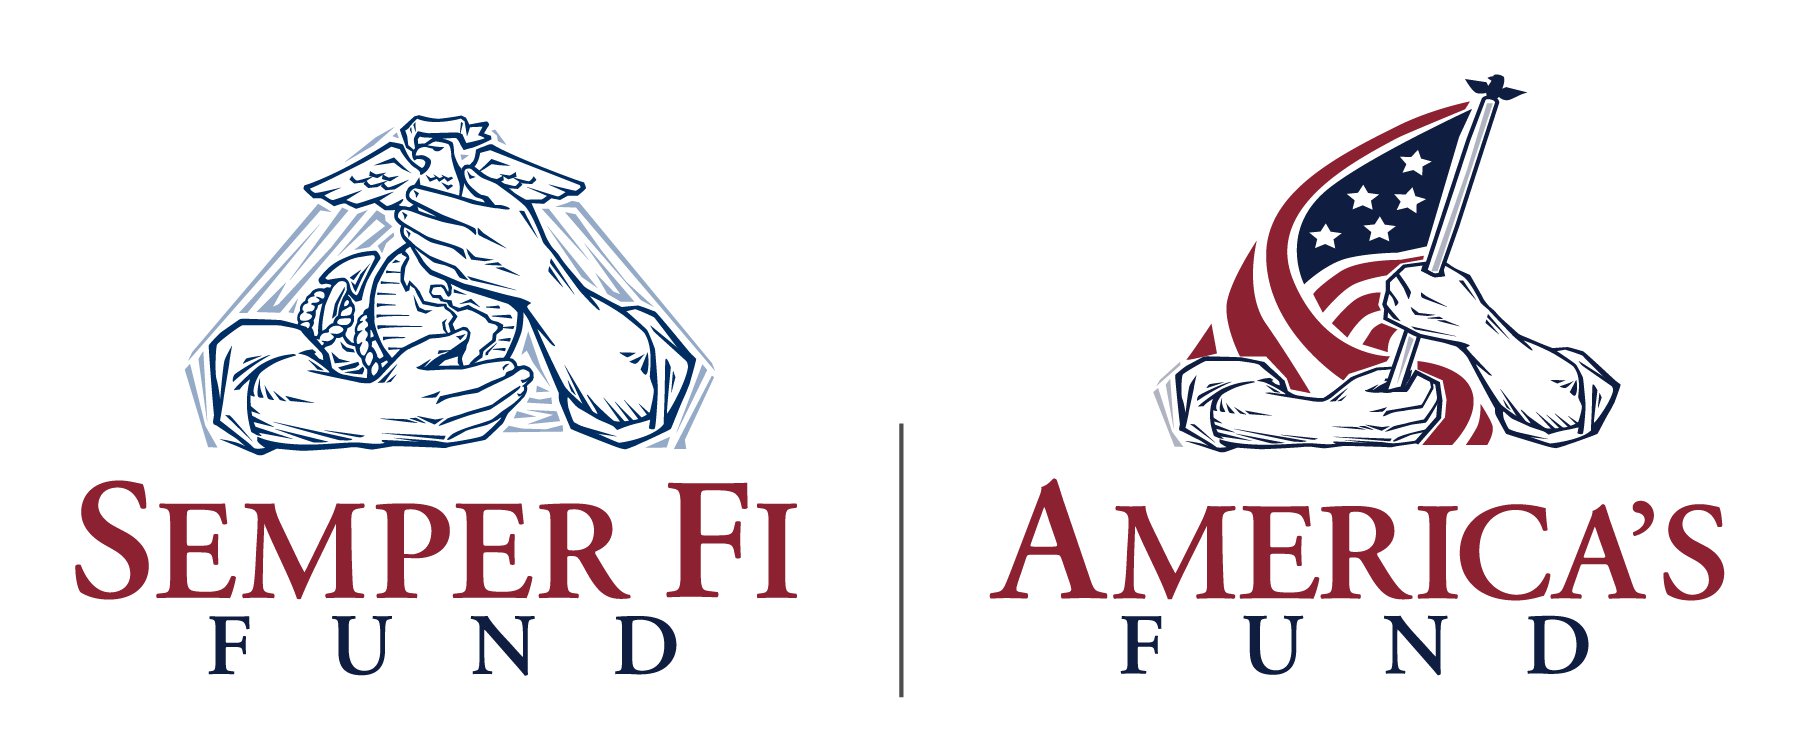 Semper Fi & America's Fund logo.jpg